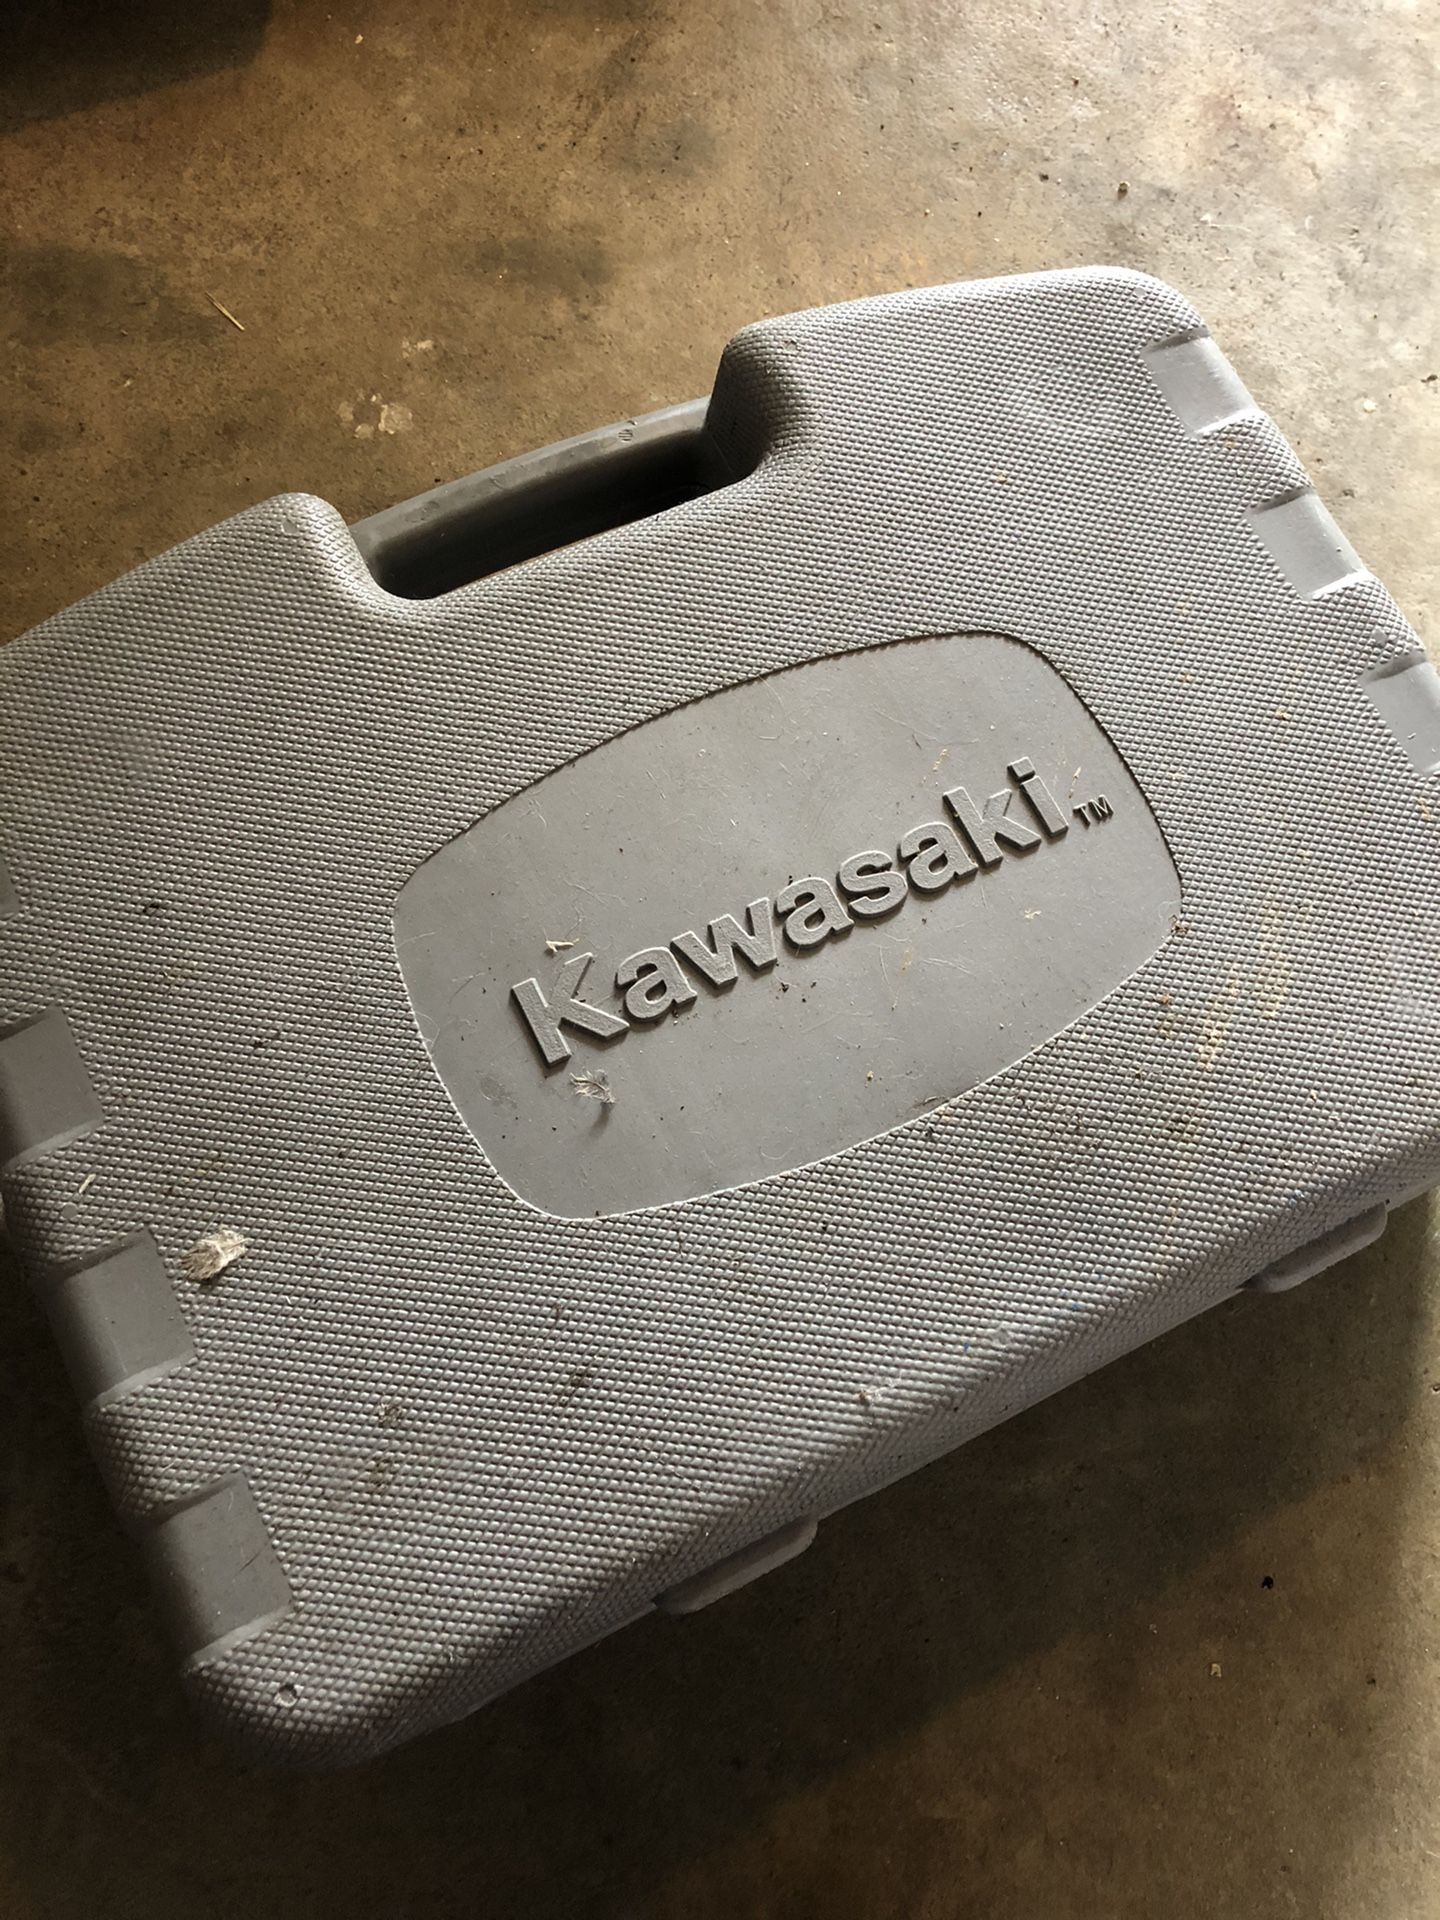 Kawasaki cordless drill